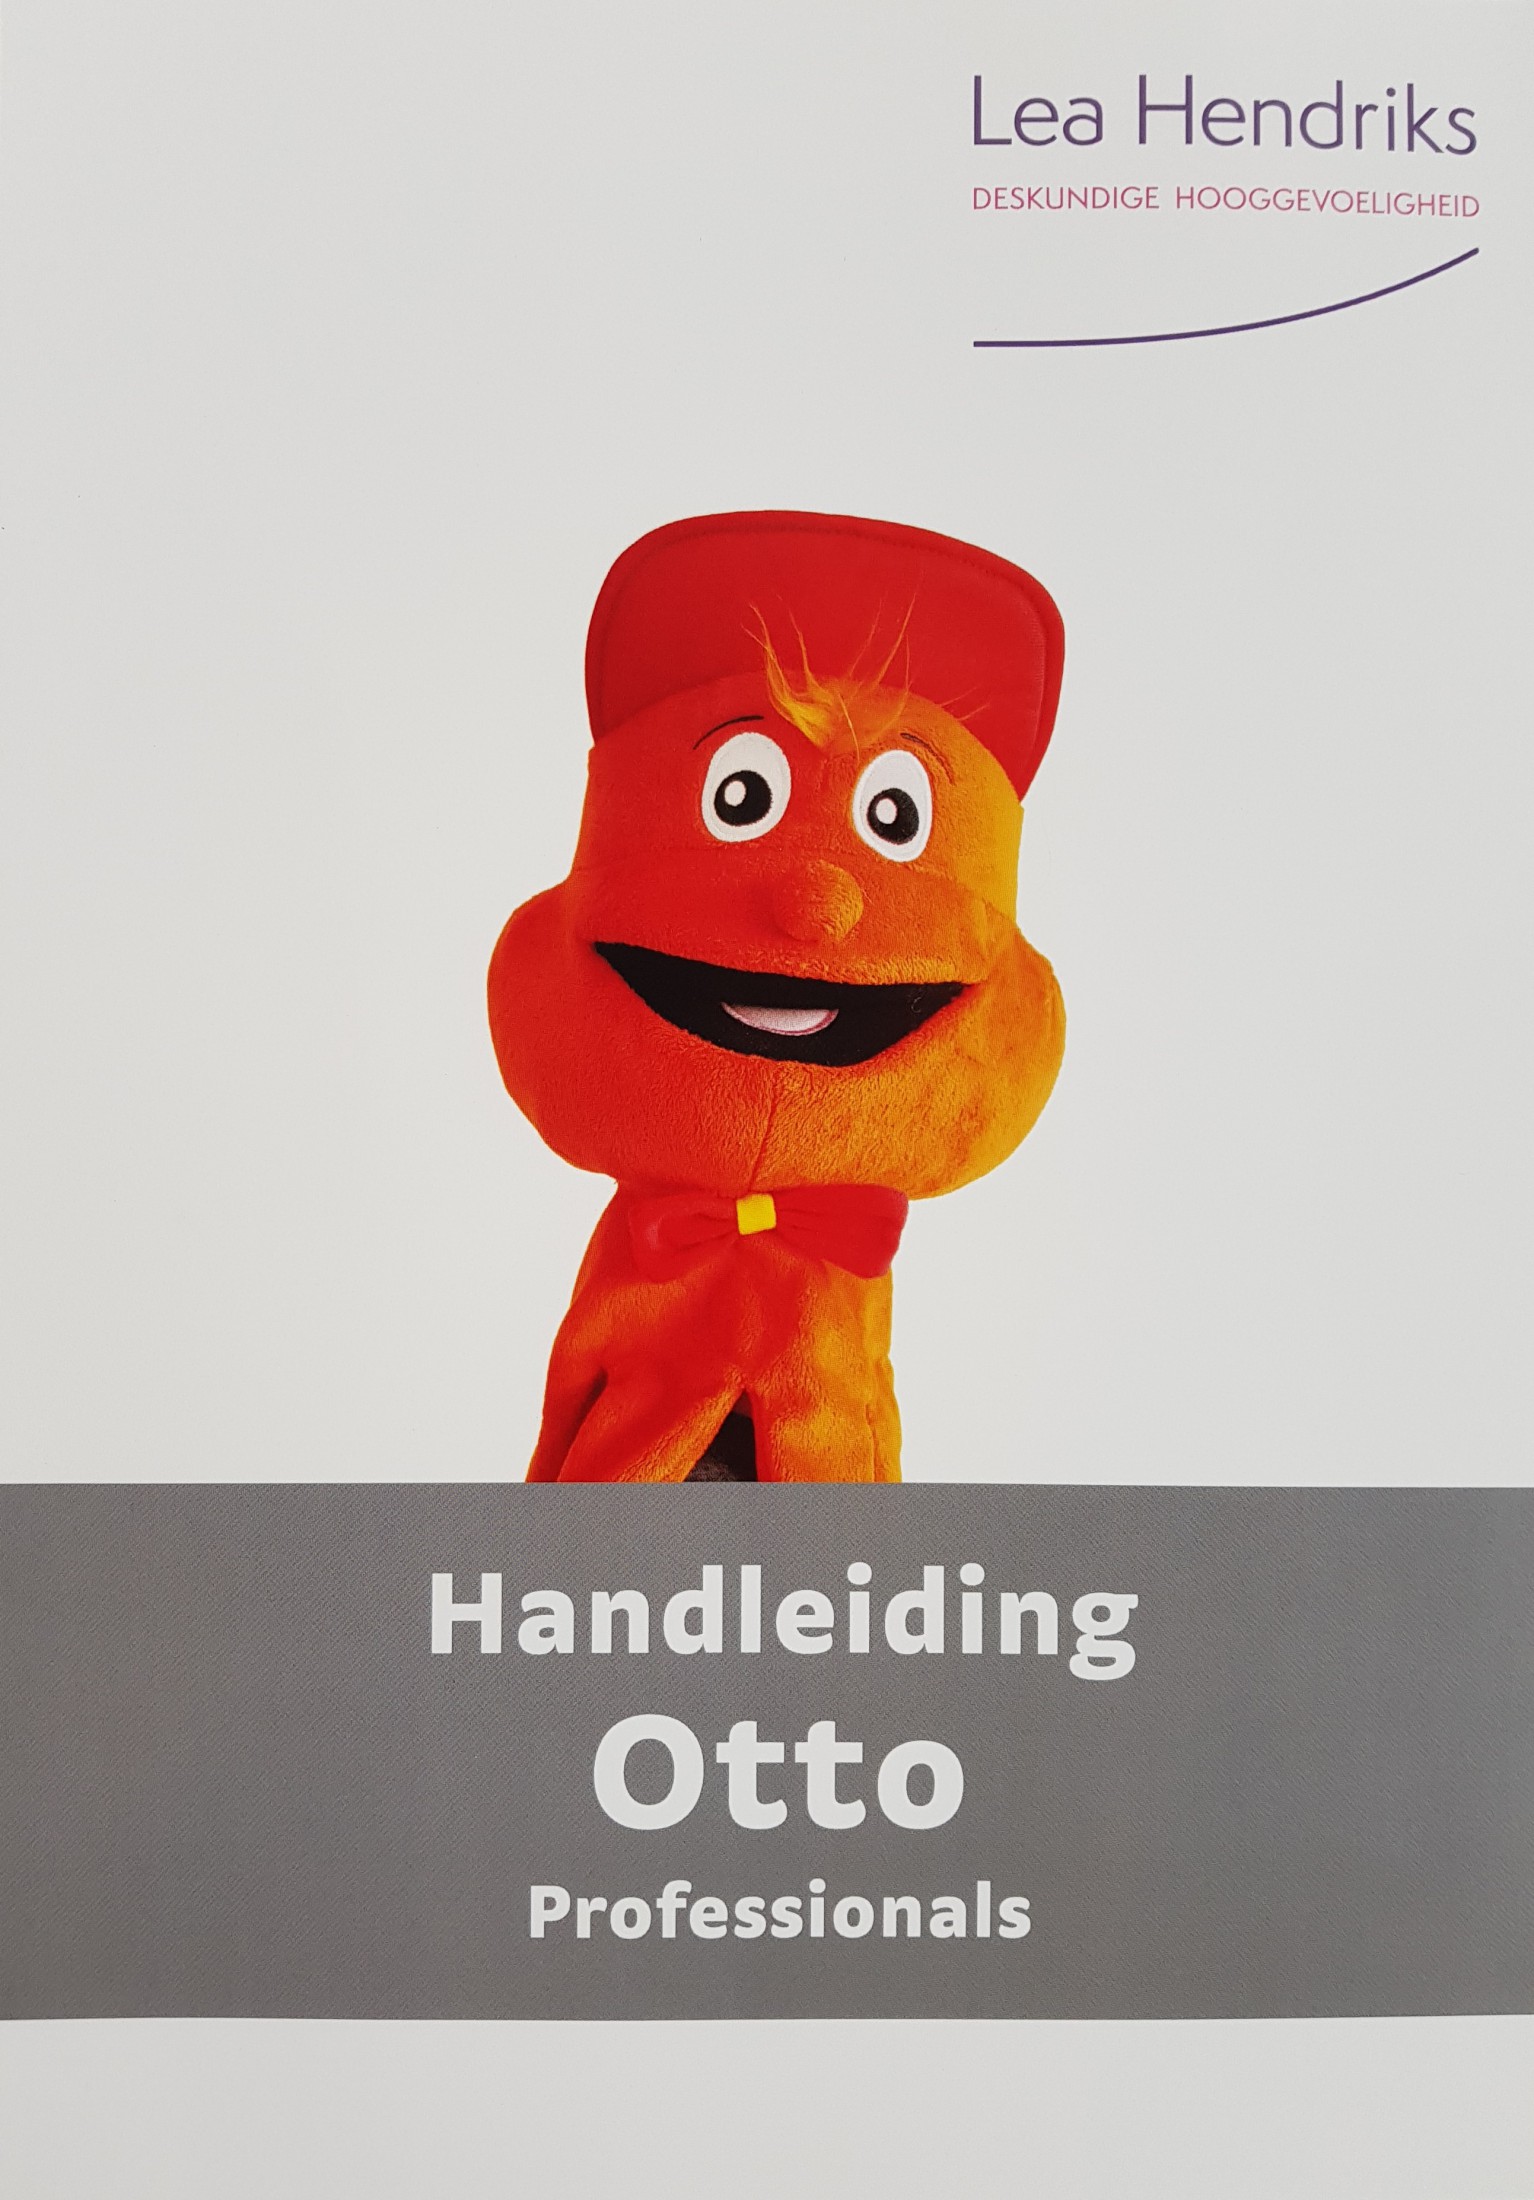 wetgeving de eerste regeling Otto de Octopus & handleiding professionals - Lea Hendriks